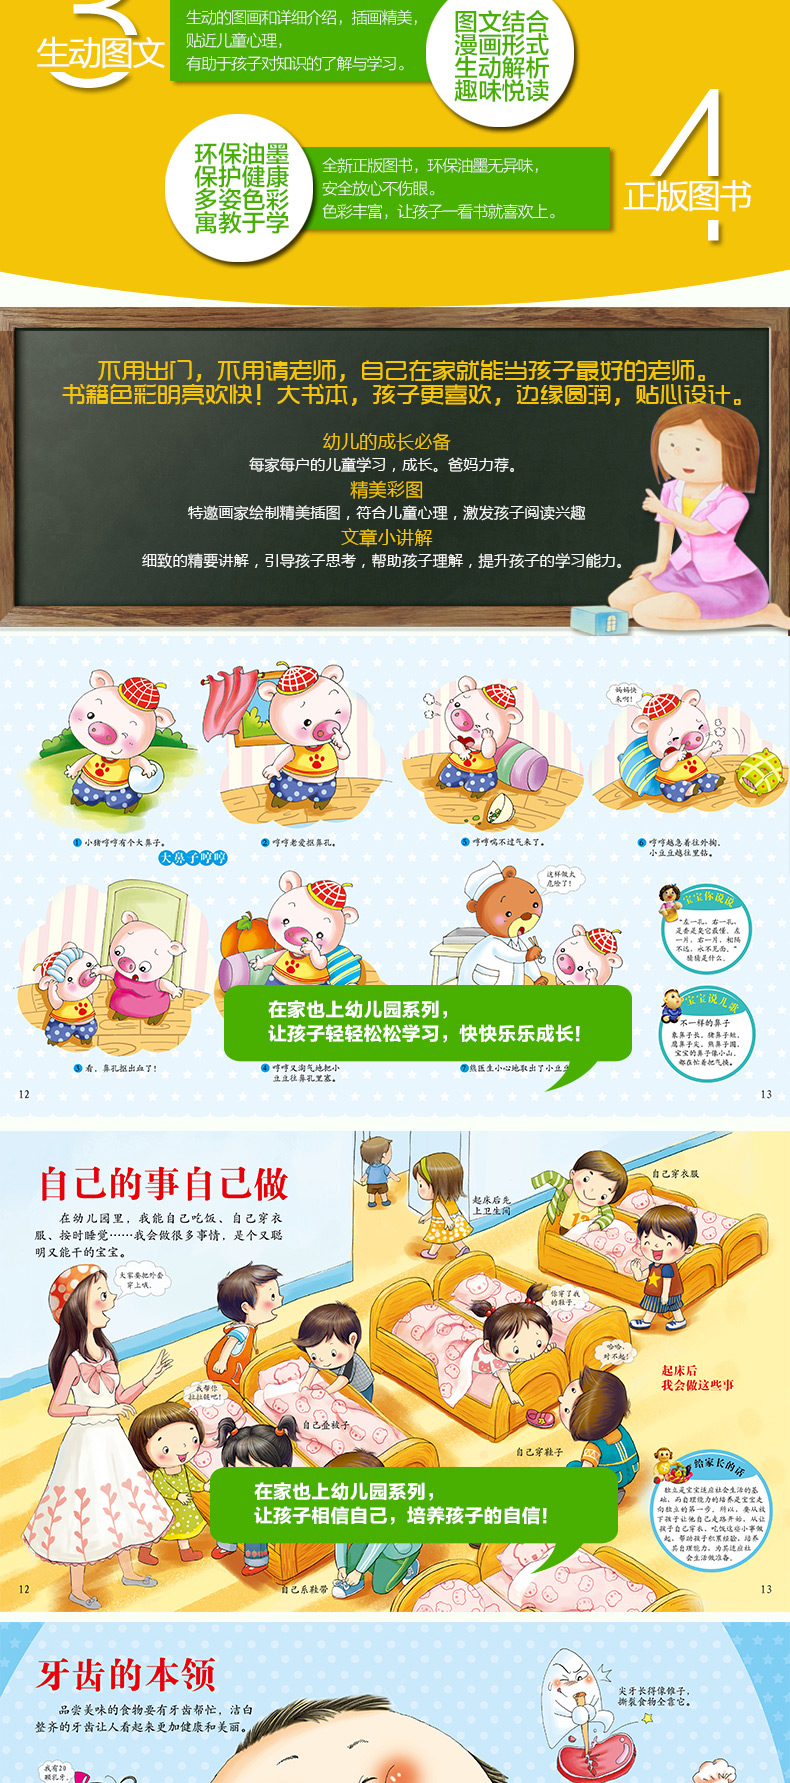 中国幼儿百科全书 在家也上幼儿园 婴幼儿童智力启蒙教育书 幼儿童科普趣味读物 幼儿EQ0-3岁绘本图书